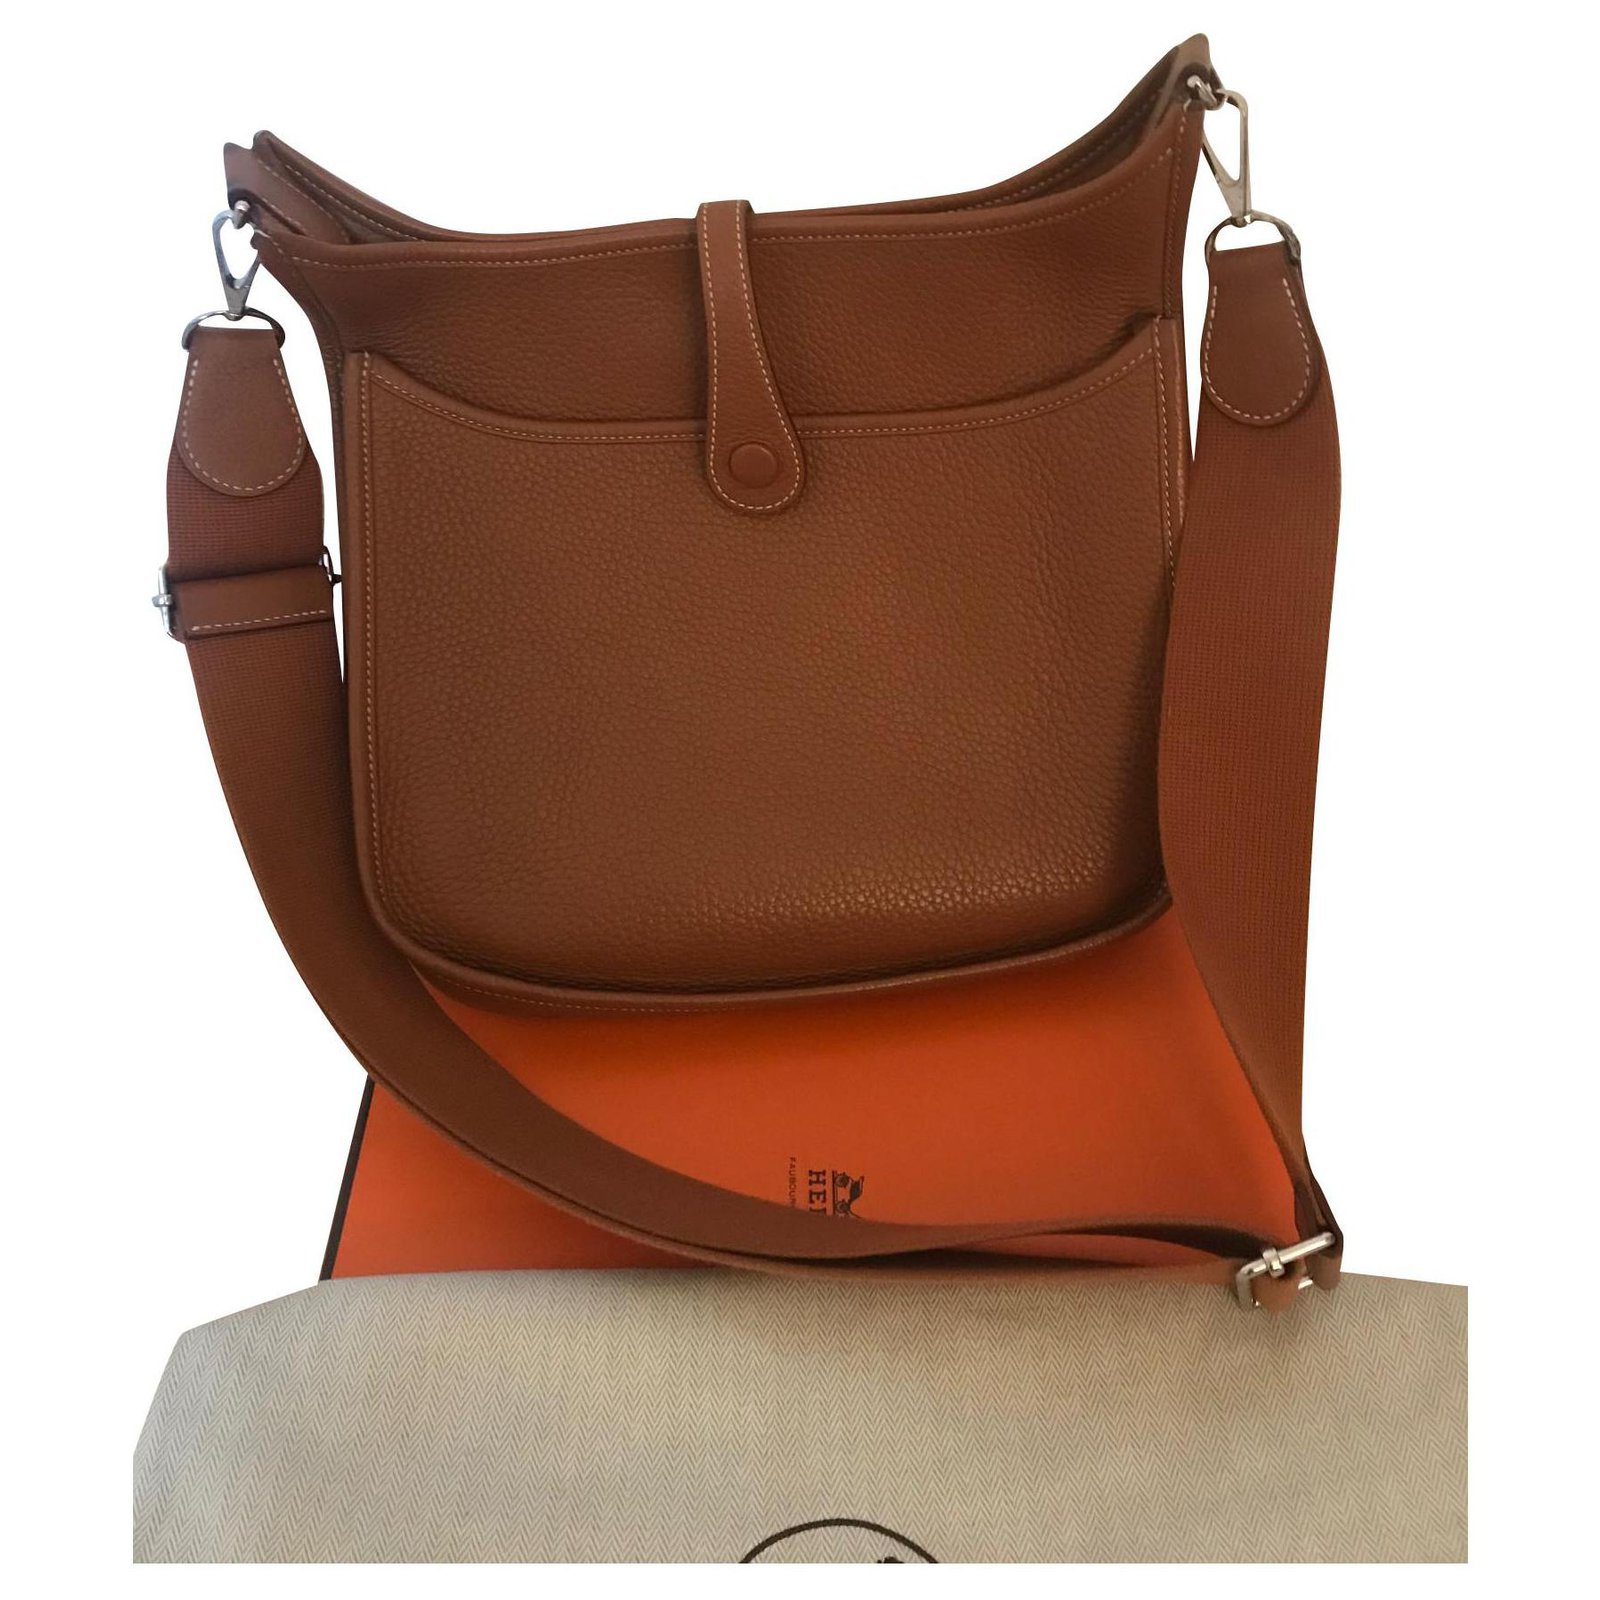 FWRD Renew Hermes Evelyne 3 PM Shoulder Bag in Brown